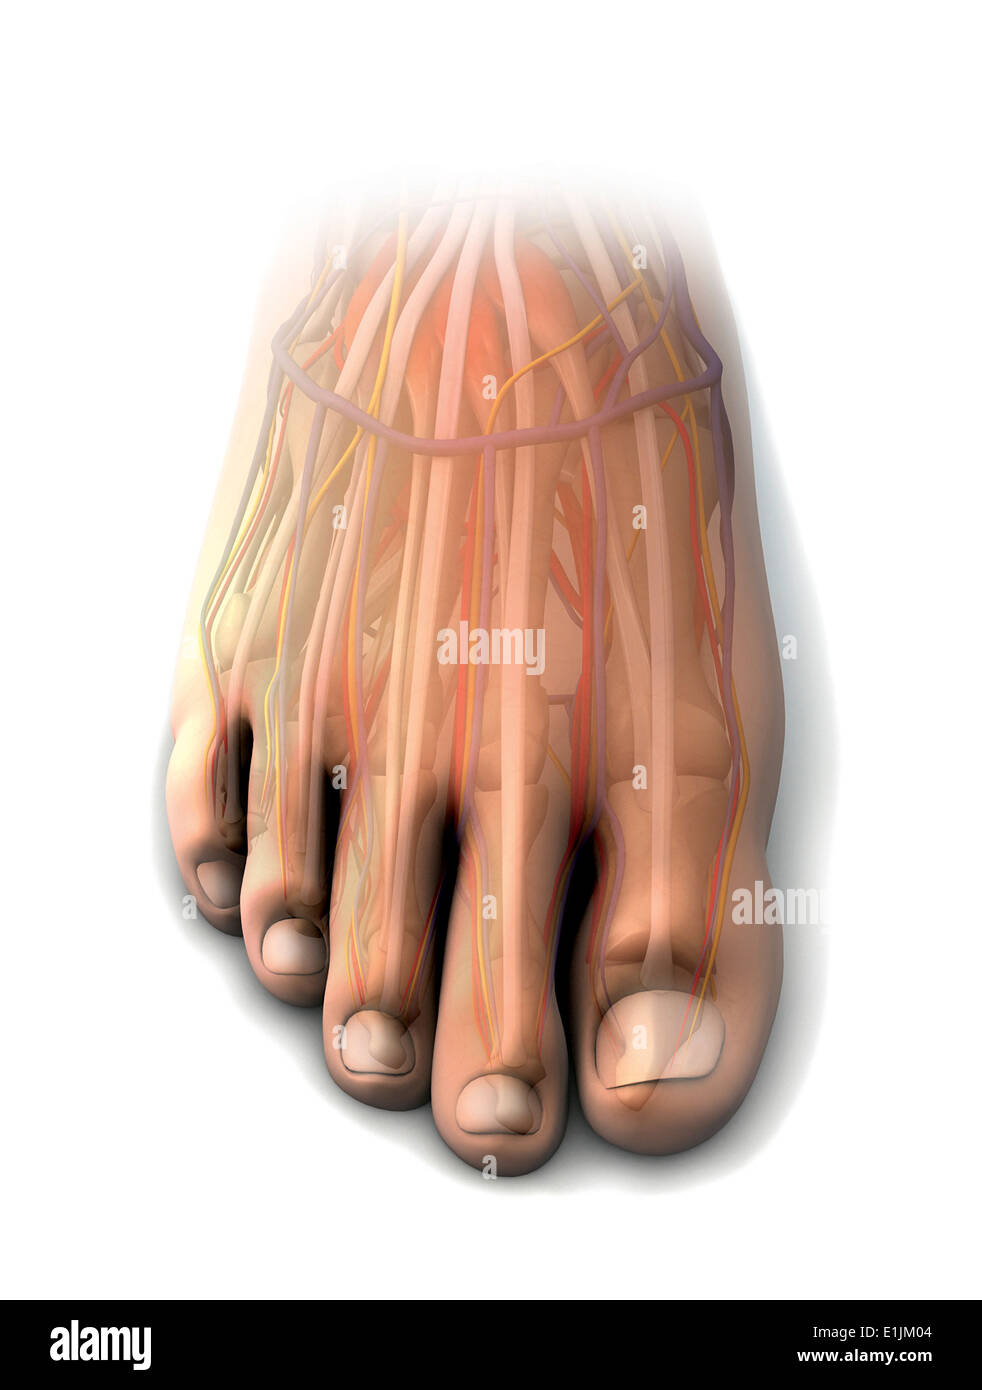 Dorsalen Anatomie des menschlichen Fußes. Stockfoto